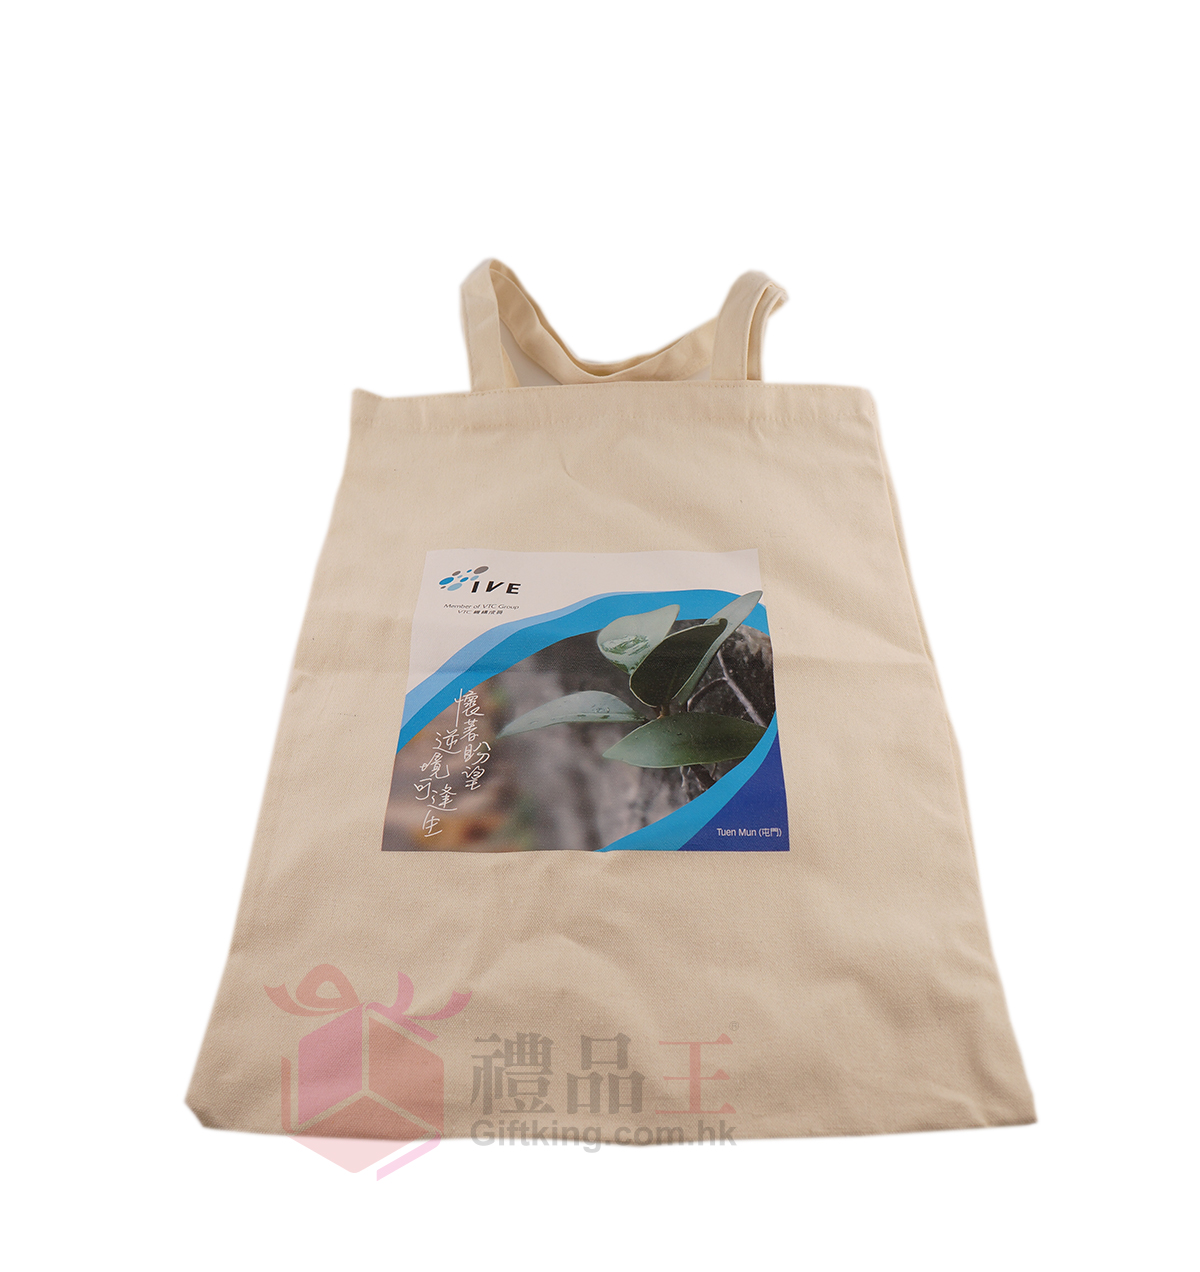  IVE 帆布环保购物袋 (环保礼品)